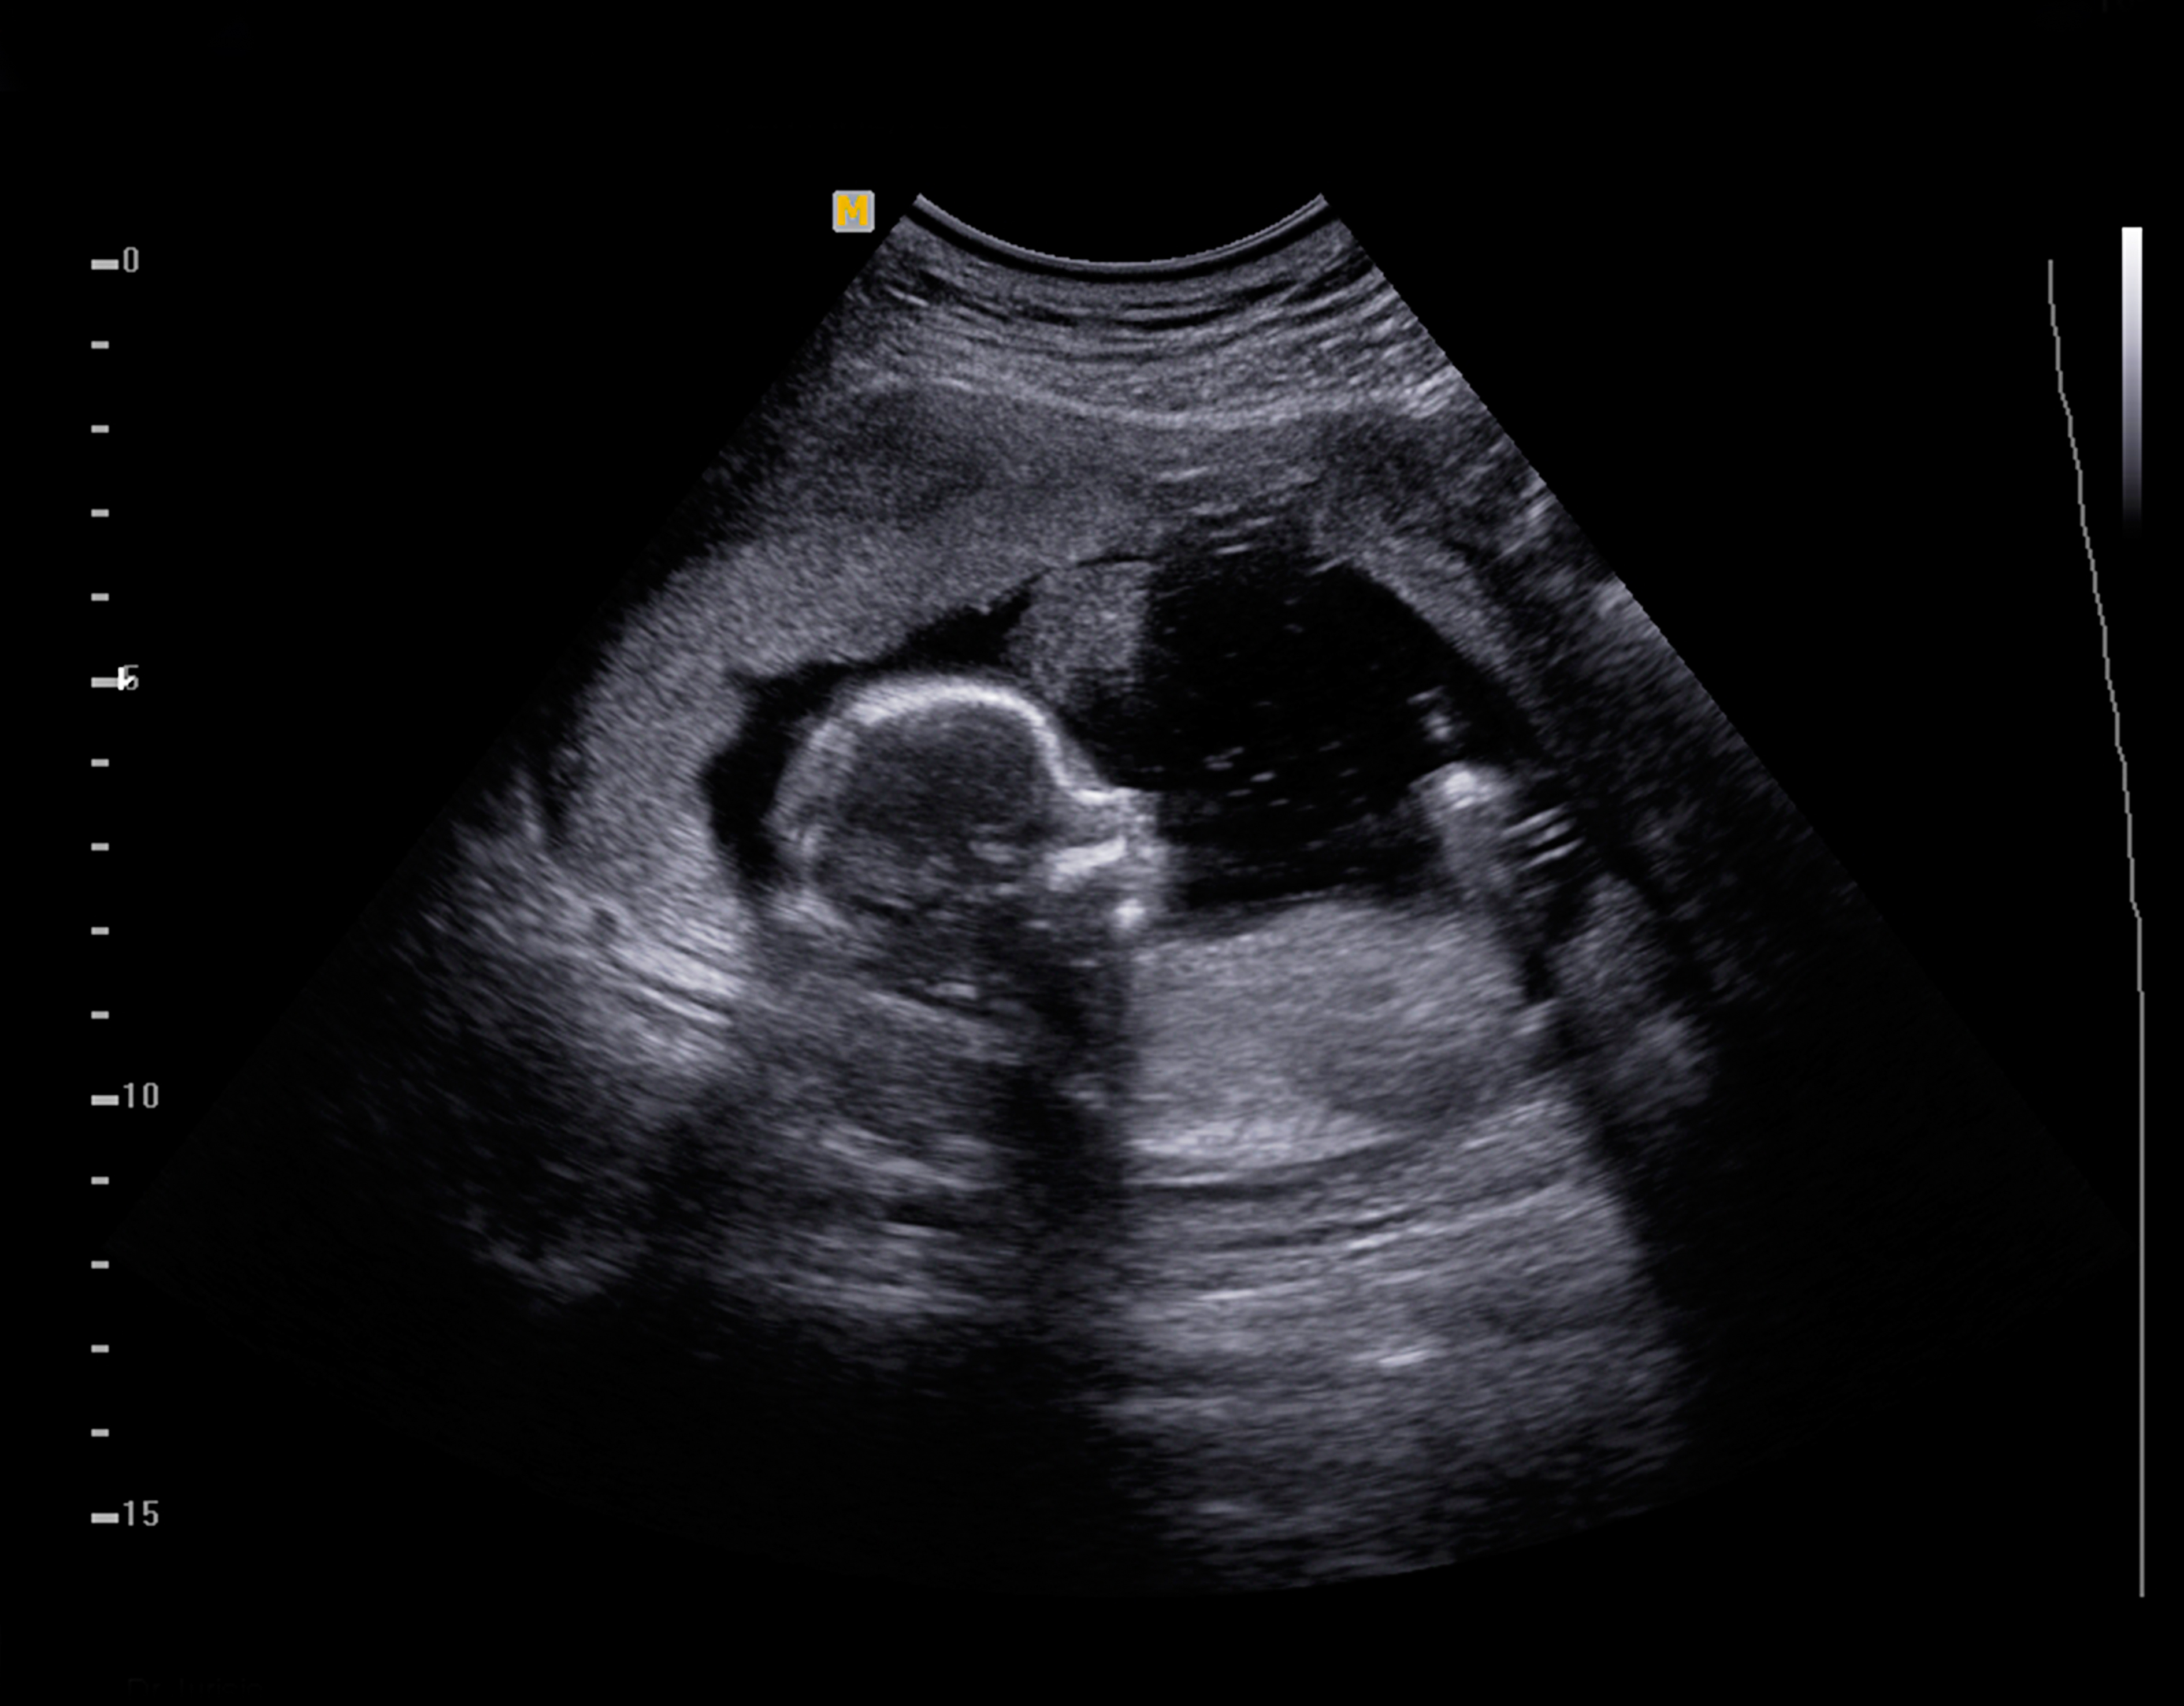 3D Ultrasound and 4D Ultrasou